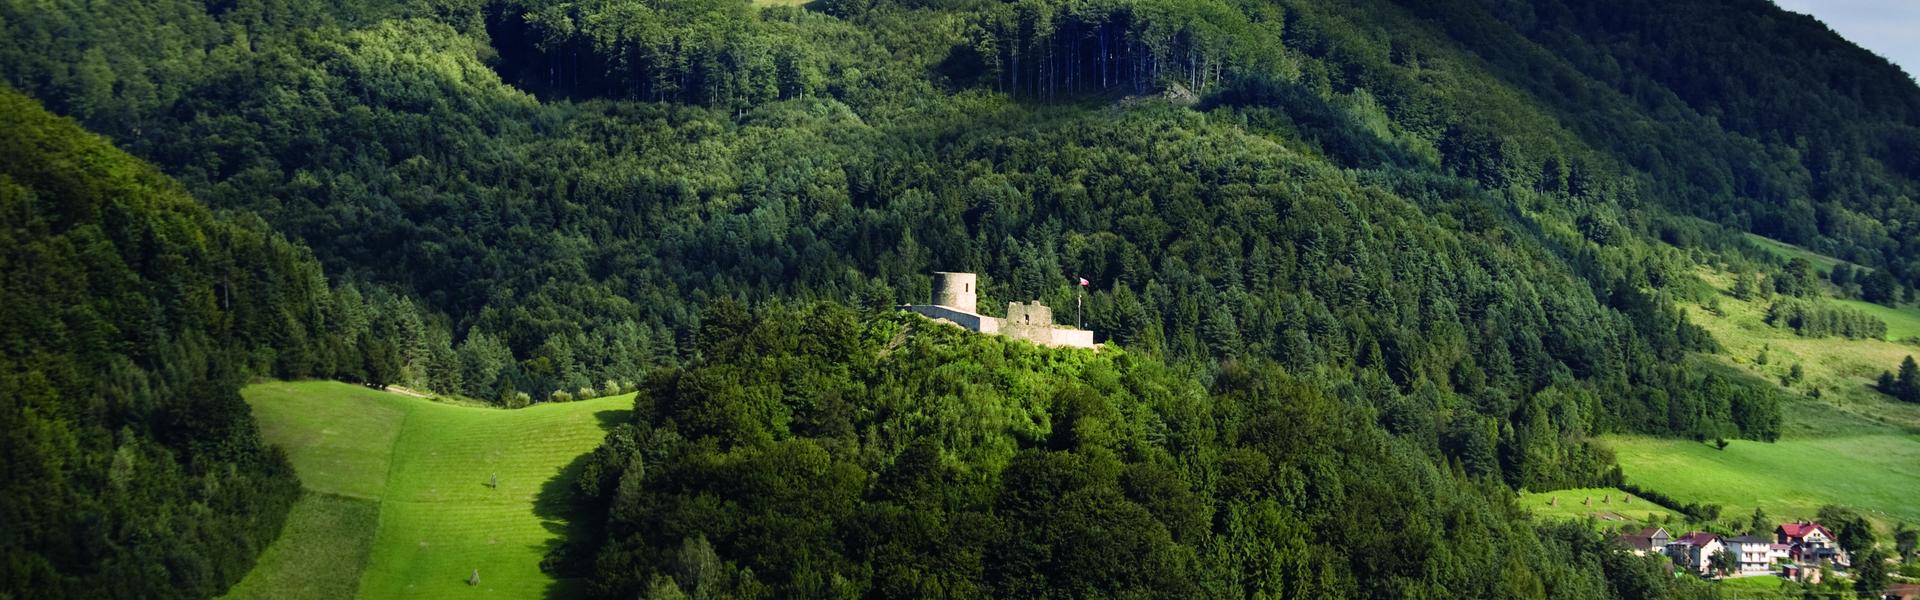 Ruiny zamku z oddali na tle zalesionych wzgórz.